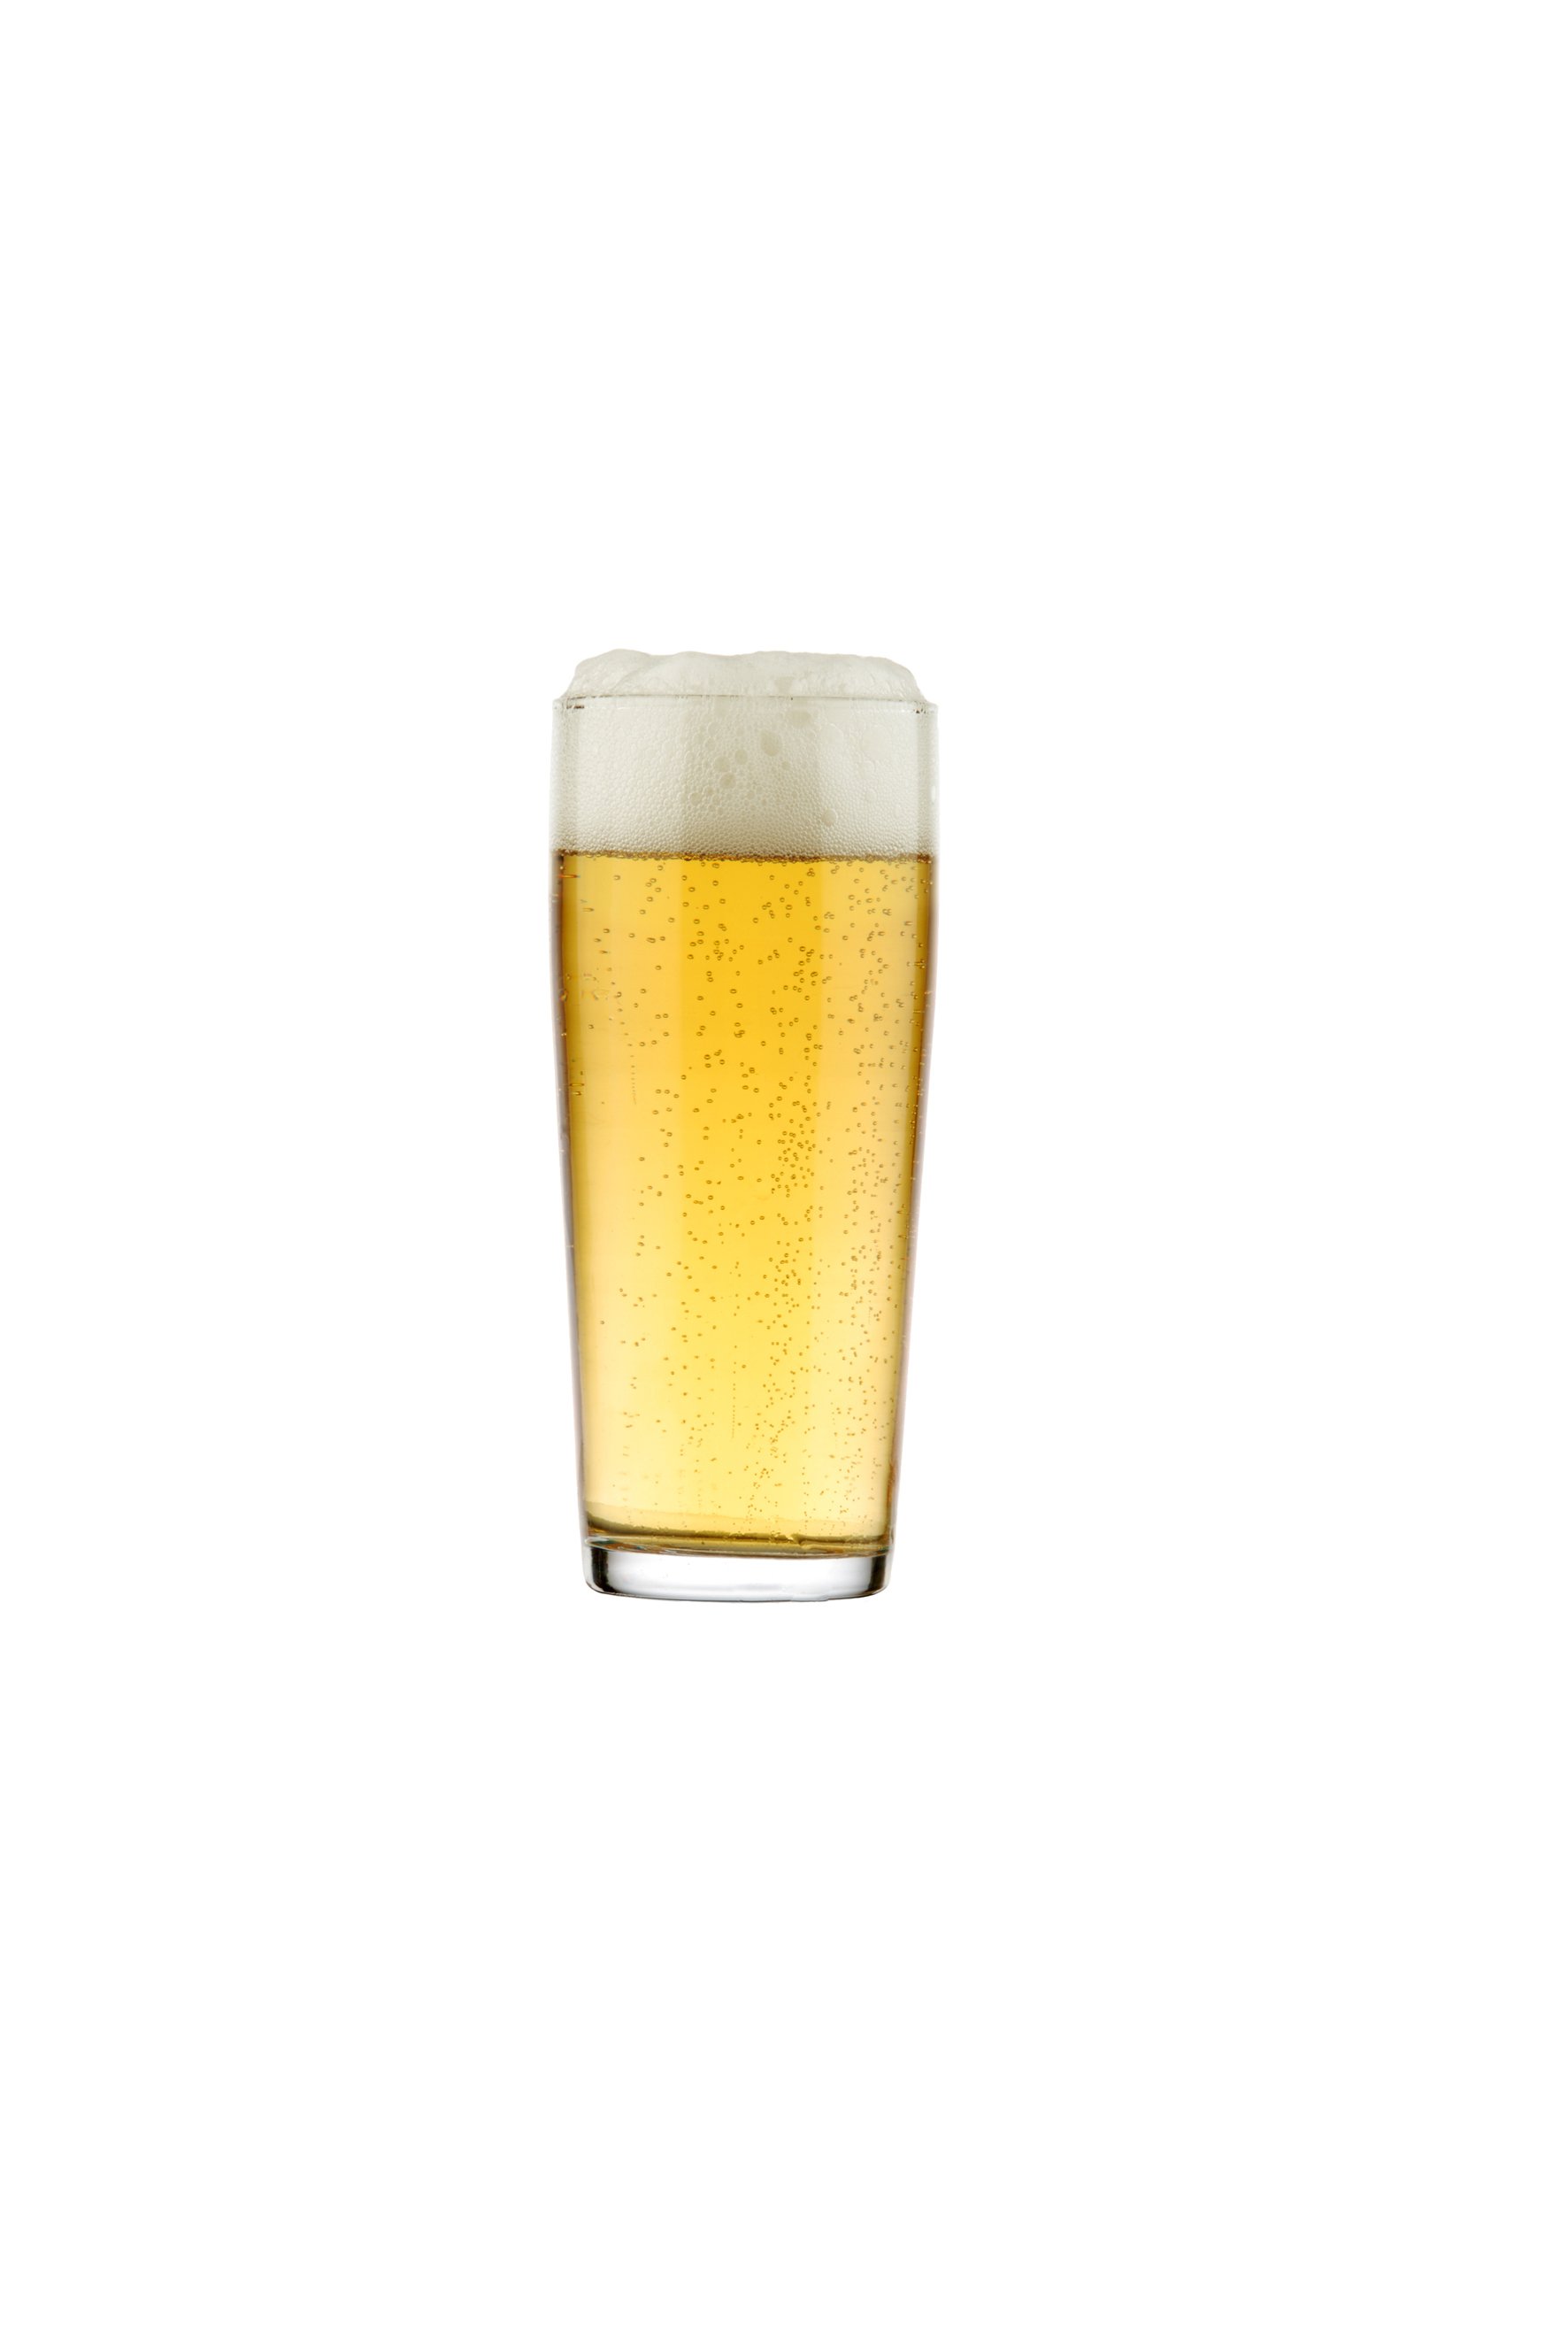 38 beer - Christien Meindertsma, PIG 05049.jpg